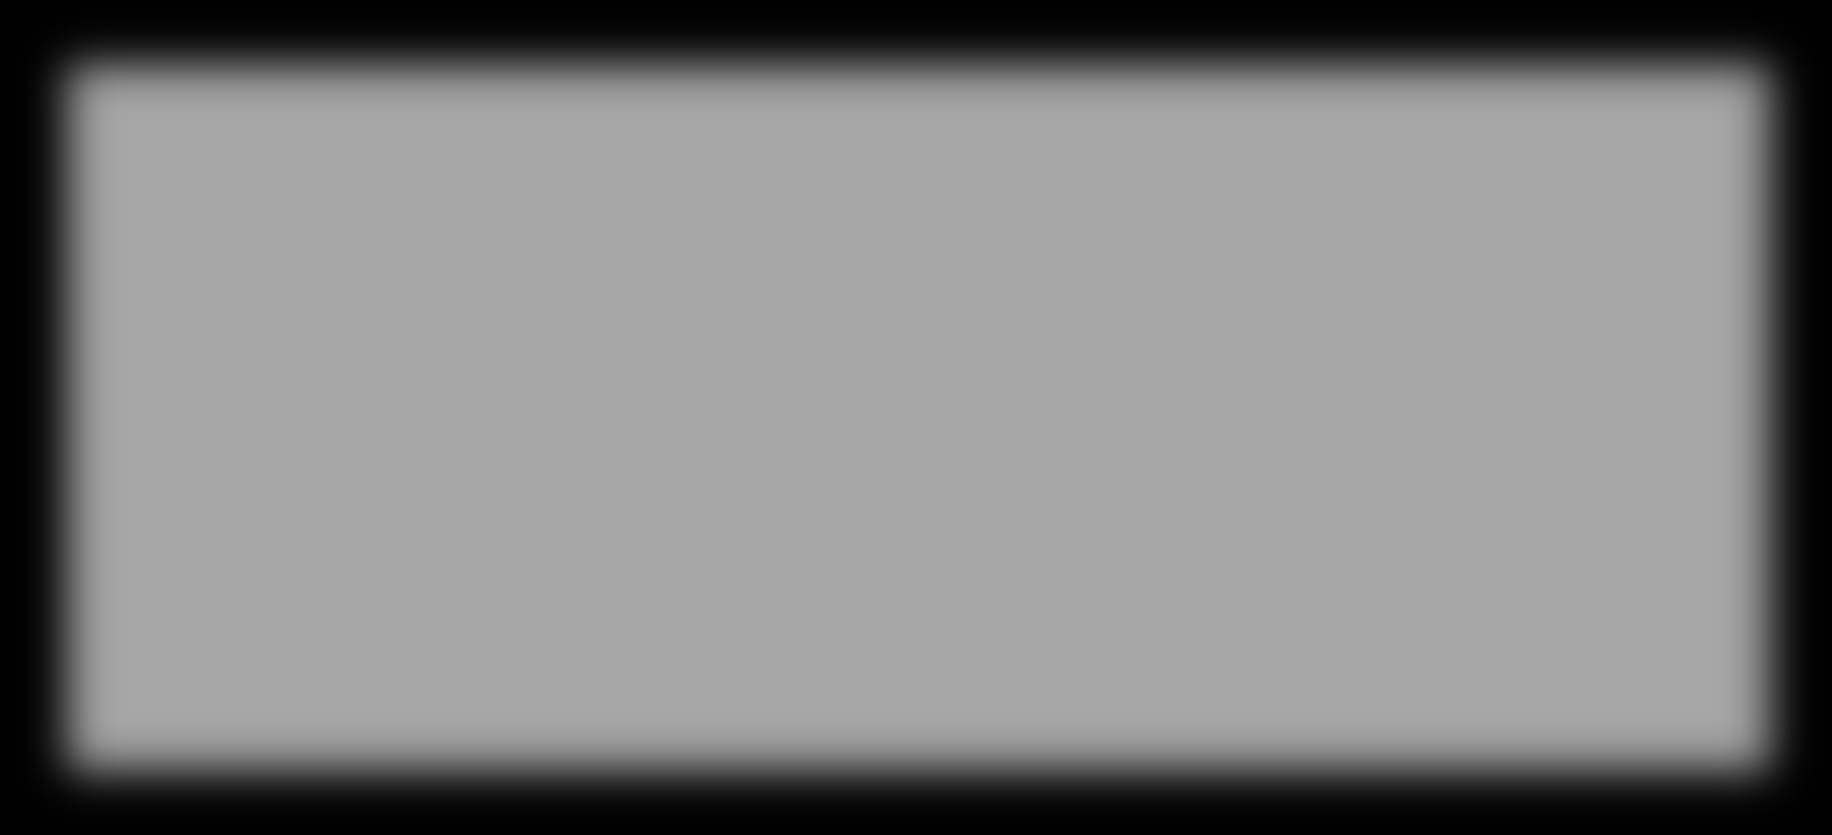 Áramátalakító állomások Átalakításra került Vasgyári hurokvágány energetikai kitáplálása kábelrongálás megszüntetése Az állomások 2014 október 24-től párhuzamos táplálással